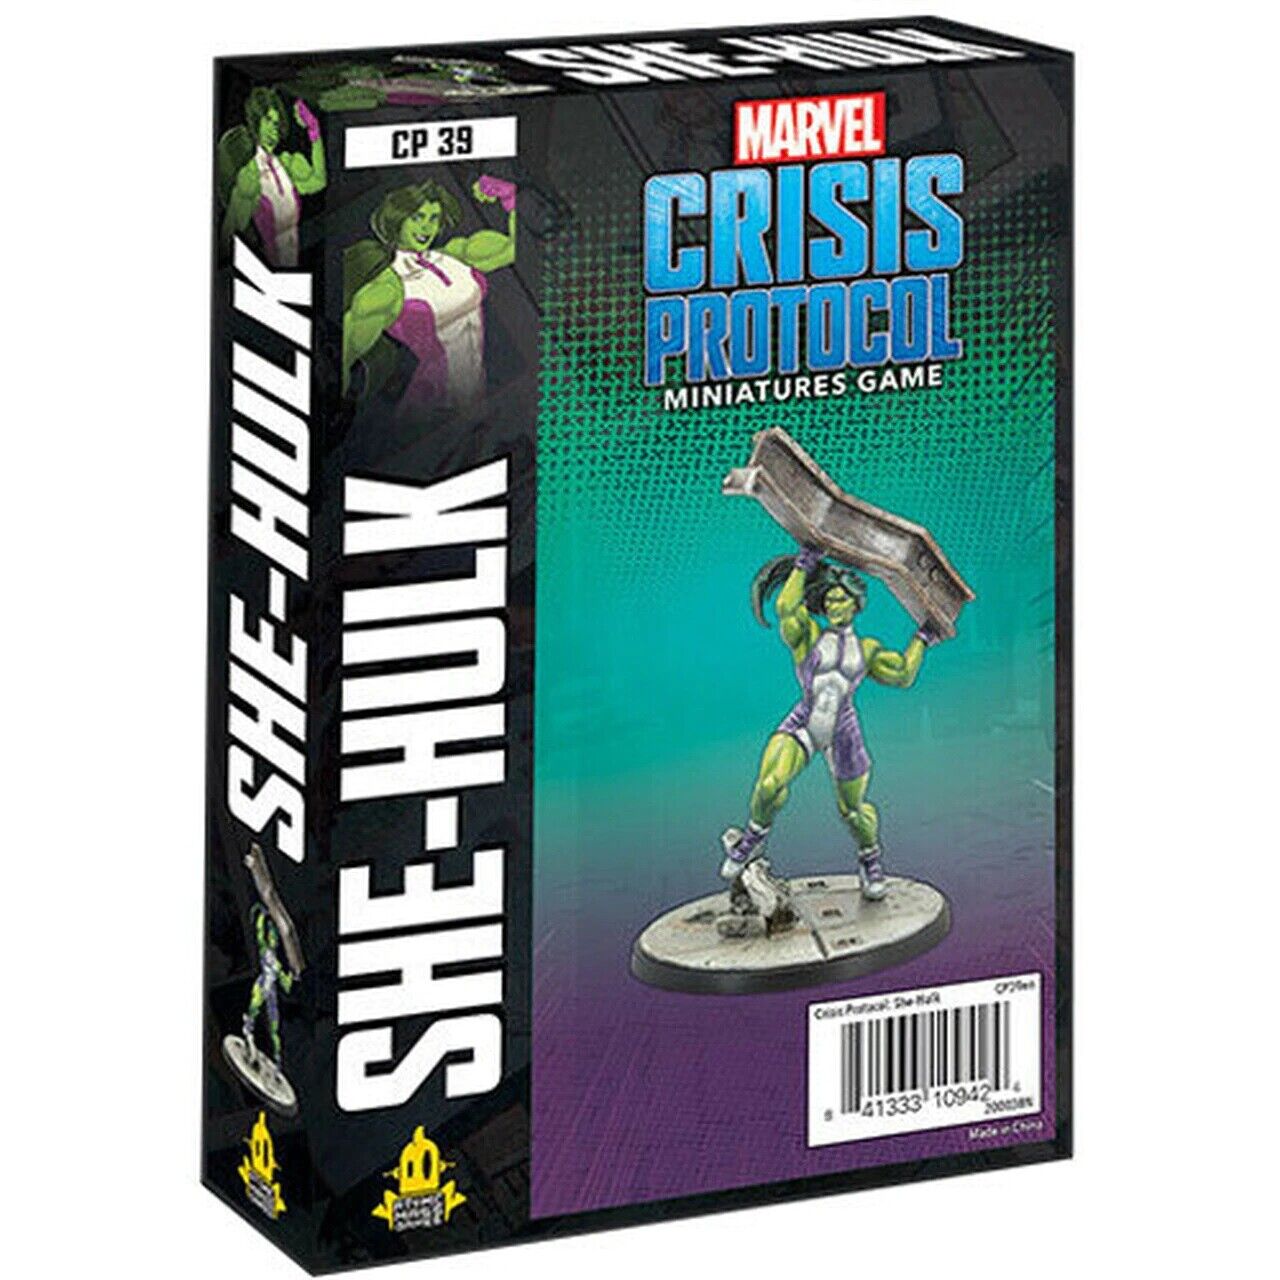 She-Hulk Character Pack Marvel Crisis Protocol Asmodee NIB